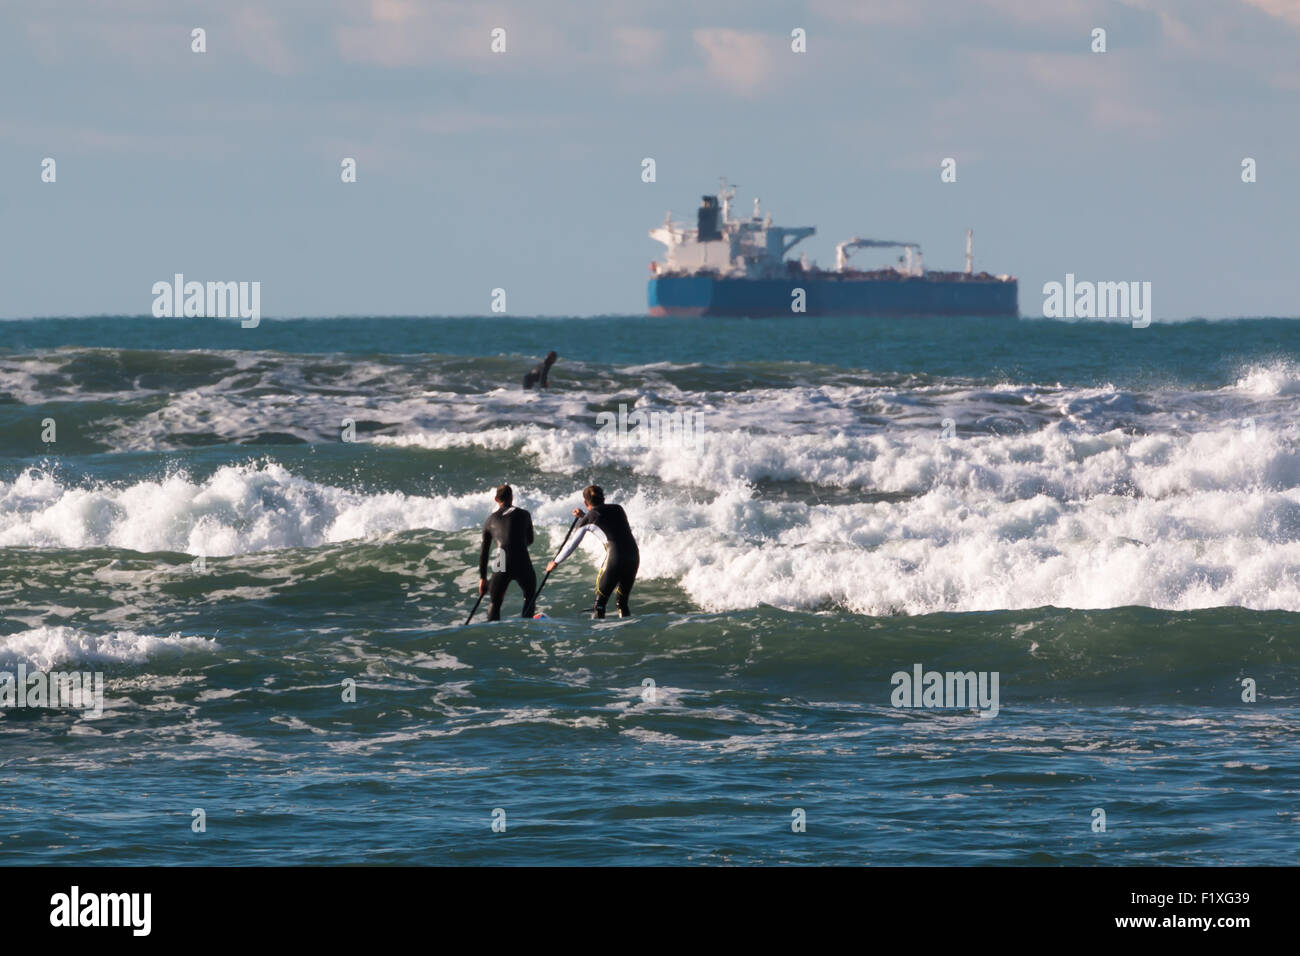 Los hombres paddleboarding on board en las olas, buque de aprovisionamiento en segundo plano. Foto de stock